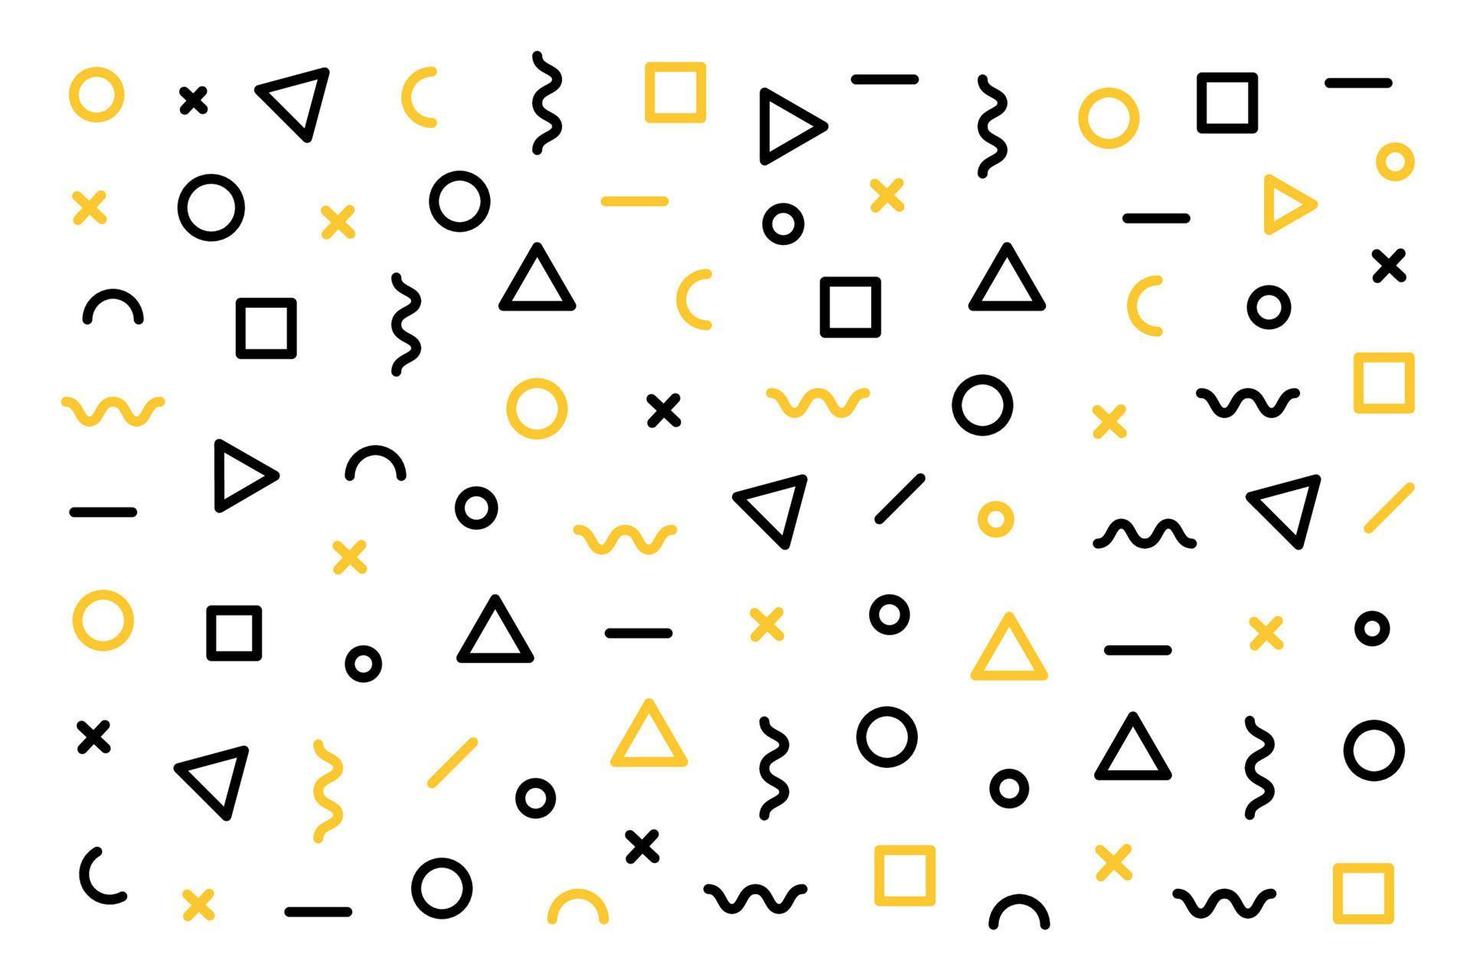 padrão de vetor geométrico de memphis com preto e amarelo.